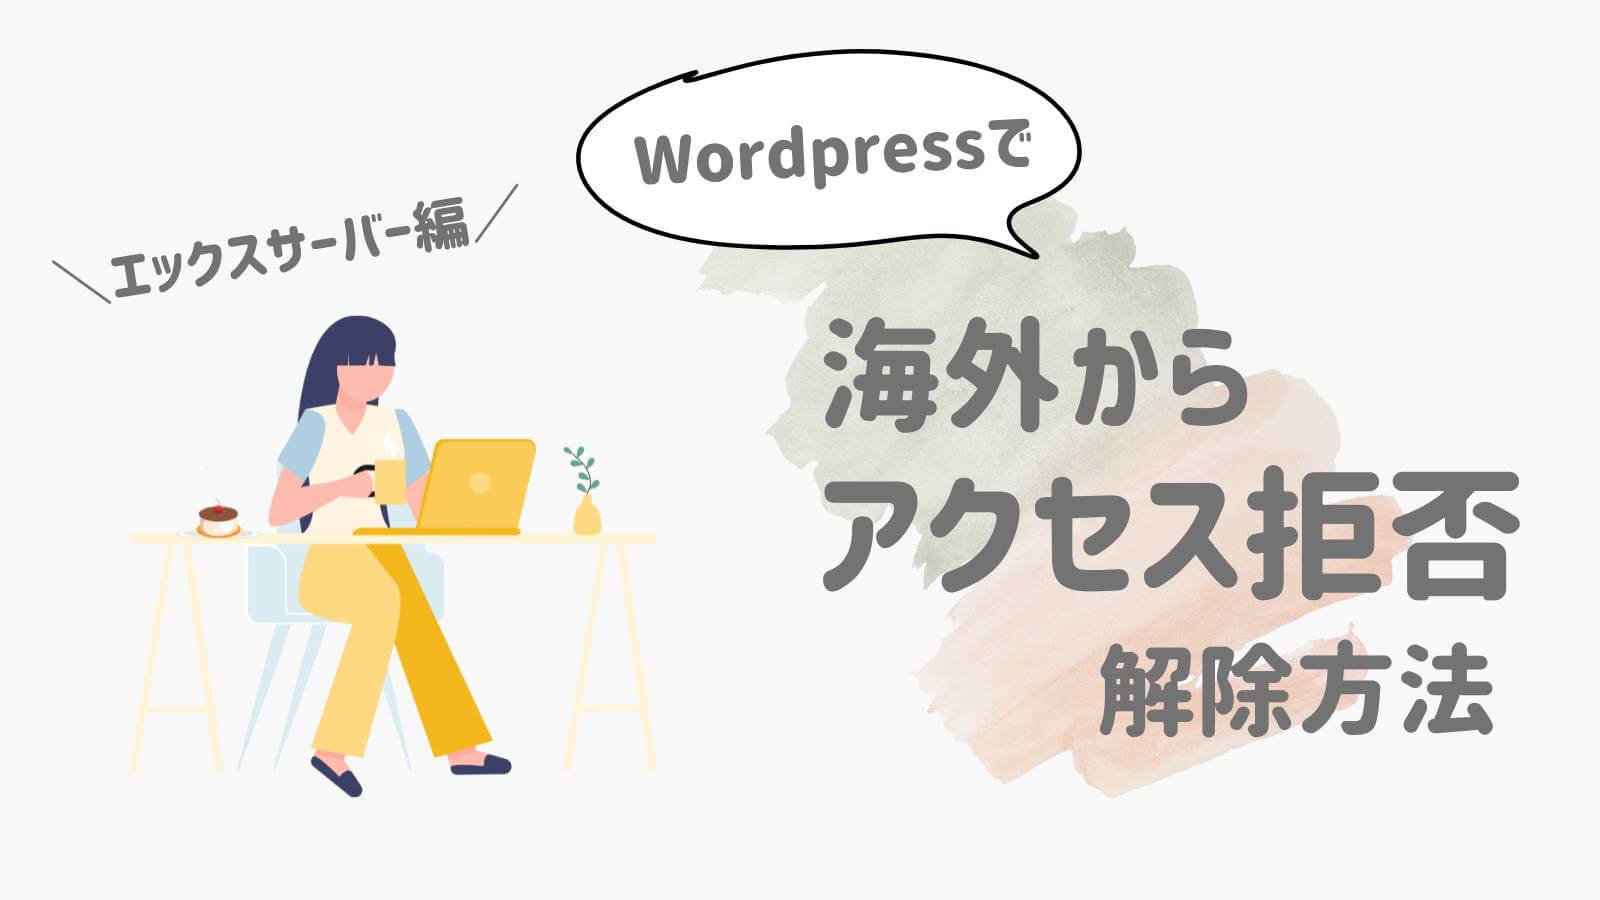 【エックスサーバー編】Wordpressで海外からアクセス拒否された時の解除方法